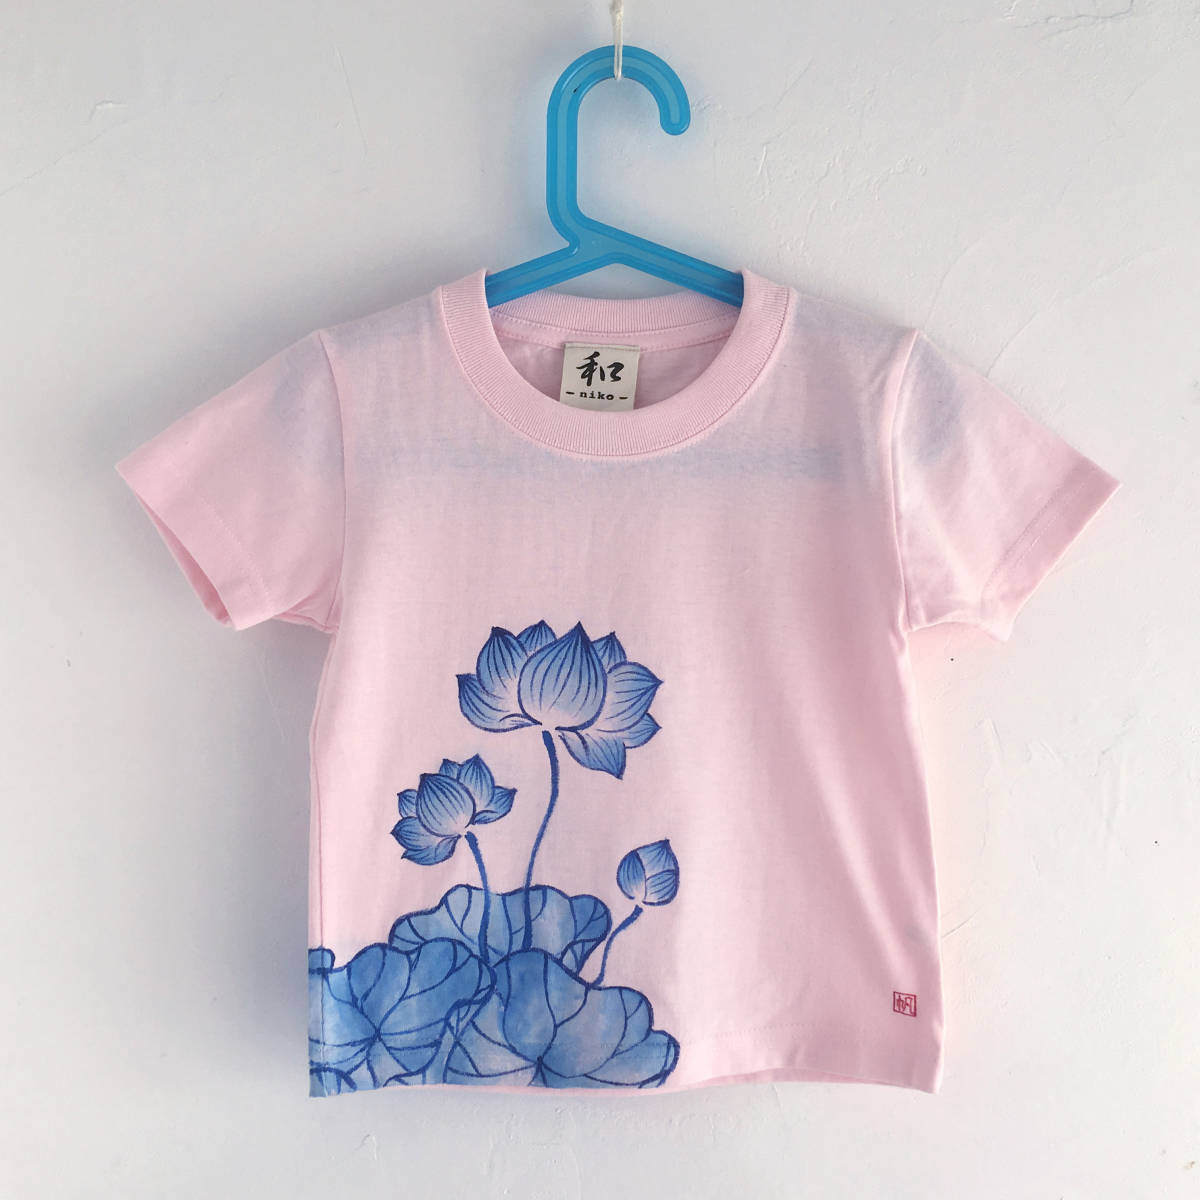 キッズ Tシャツ 140サイズ ピンク 蓮柄Tシャツ 手描きで描いた蓮の花柄Tシャツ 半袖 和柄 和風 レトロ ハンドメイド